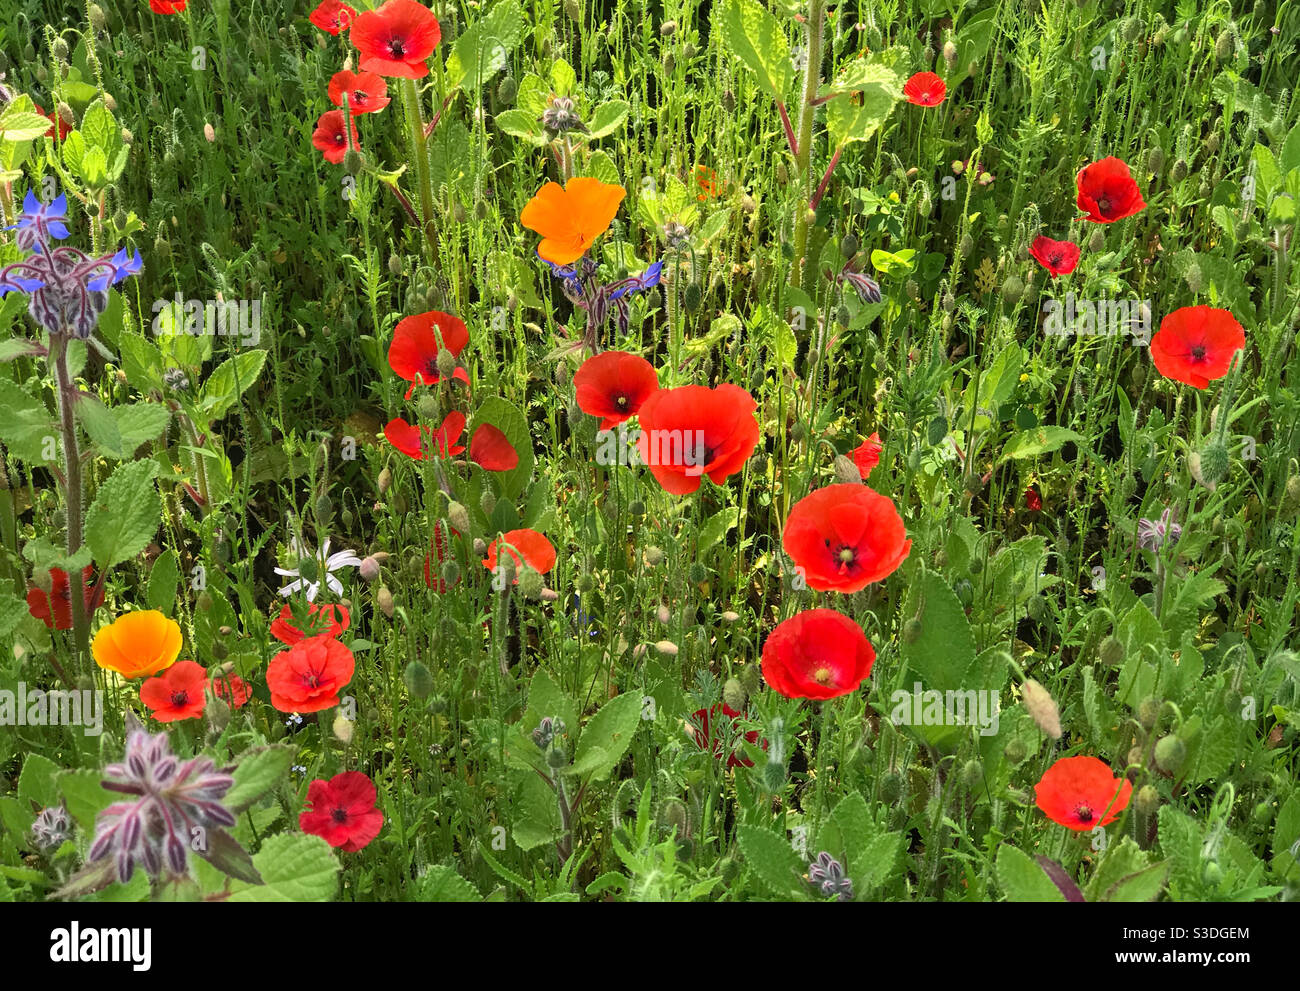 Plante de jardin de fleurs sauvages en cours de croissance pour encourager les pollinisateurs. Worcestershire, Angleterre. Banque D'Images